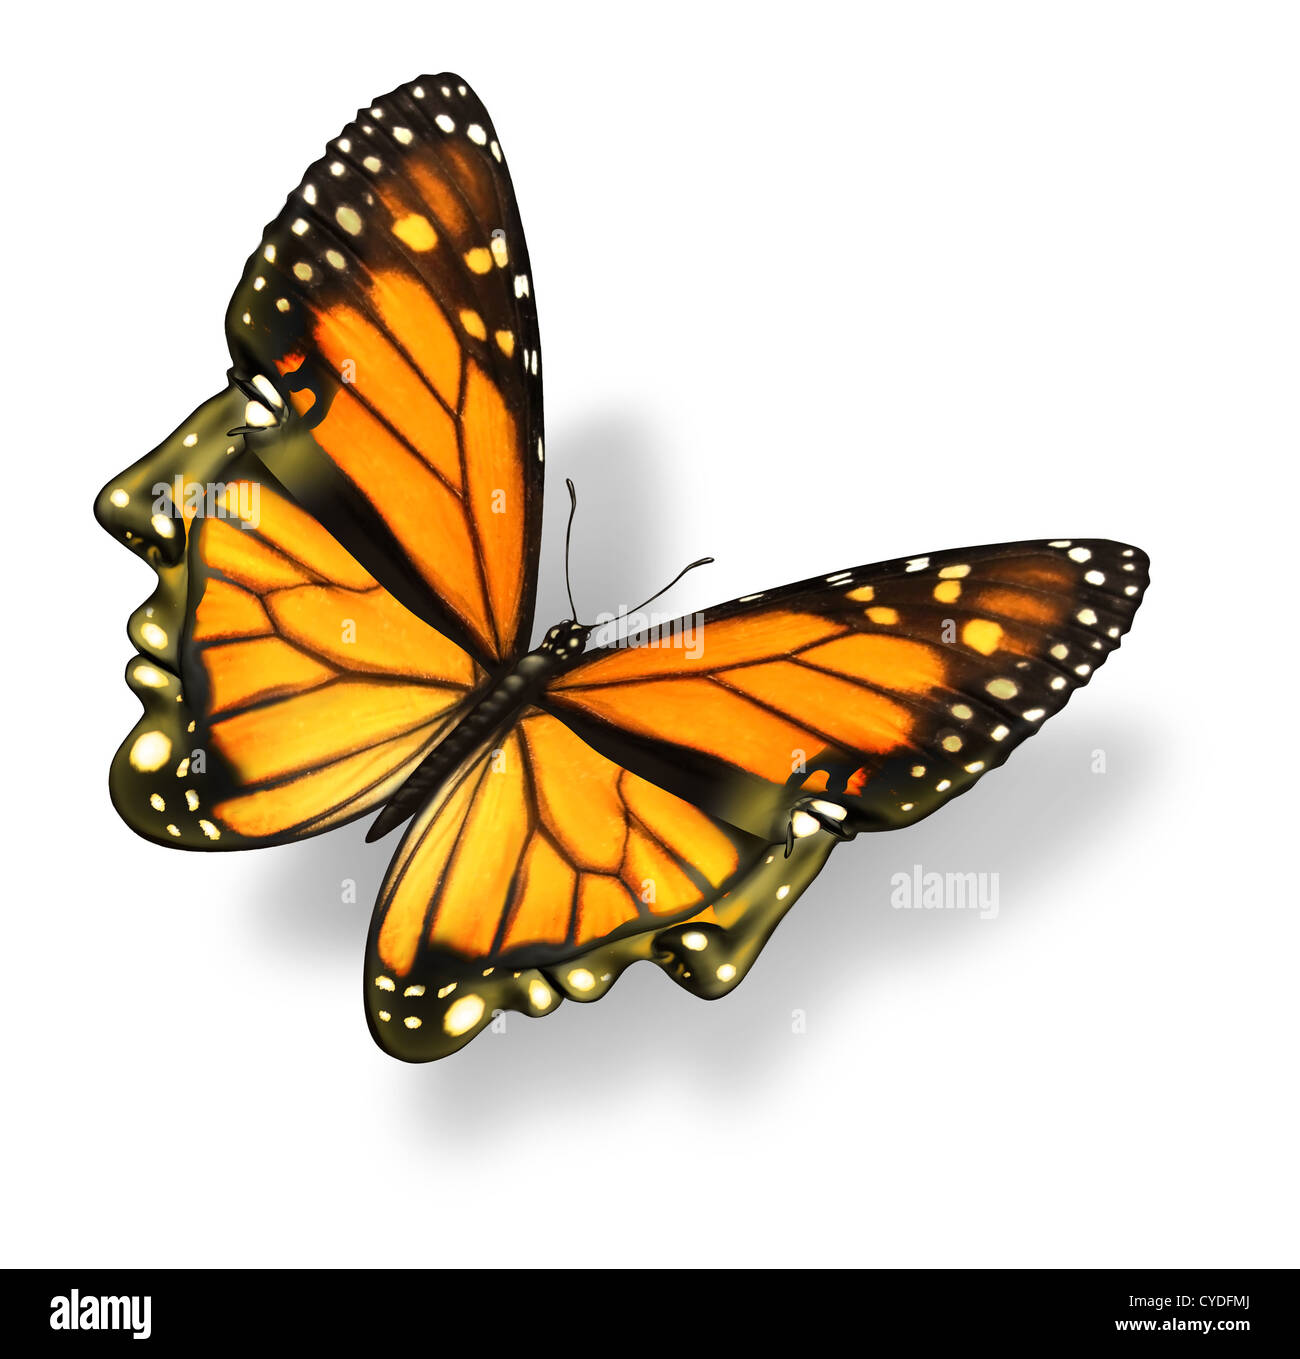 Menschliche Freiheit und Ihr Geist medizinische Gesundheitsversorgung Konzept mit einem Monarchfalter Insekt in der Form eines menschlichen Kopfes frei Stockfoto